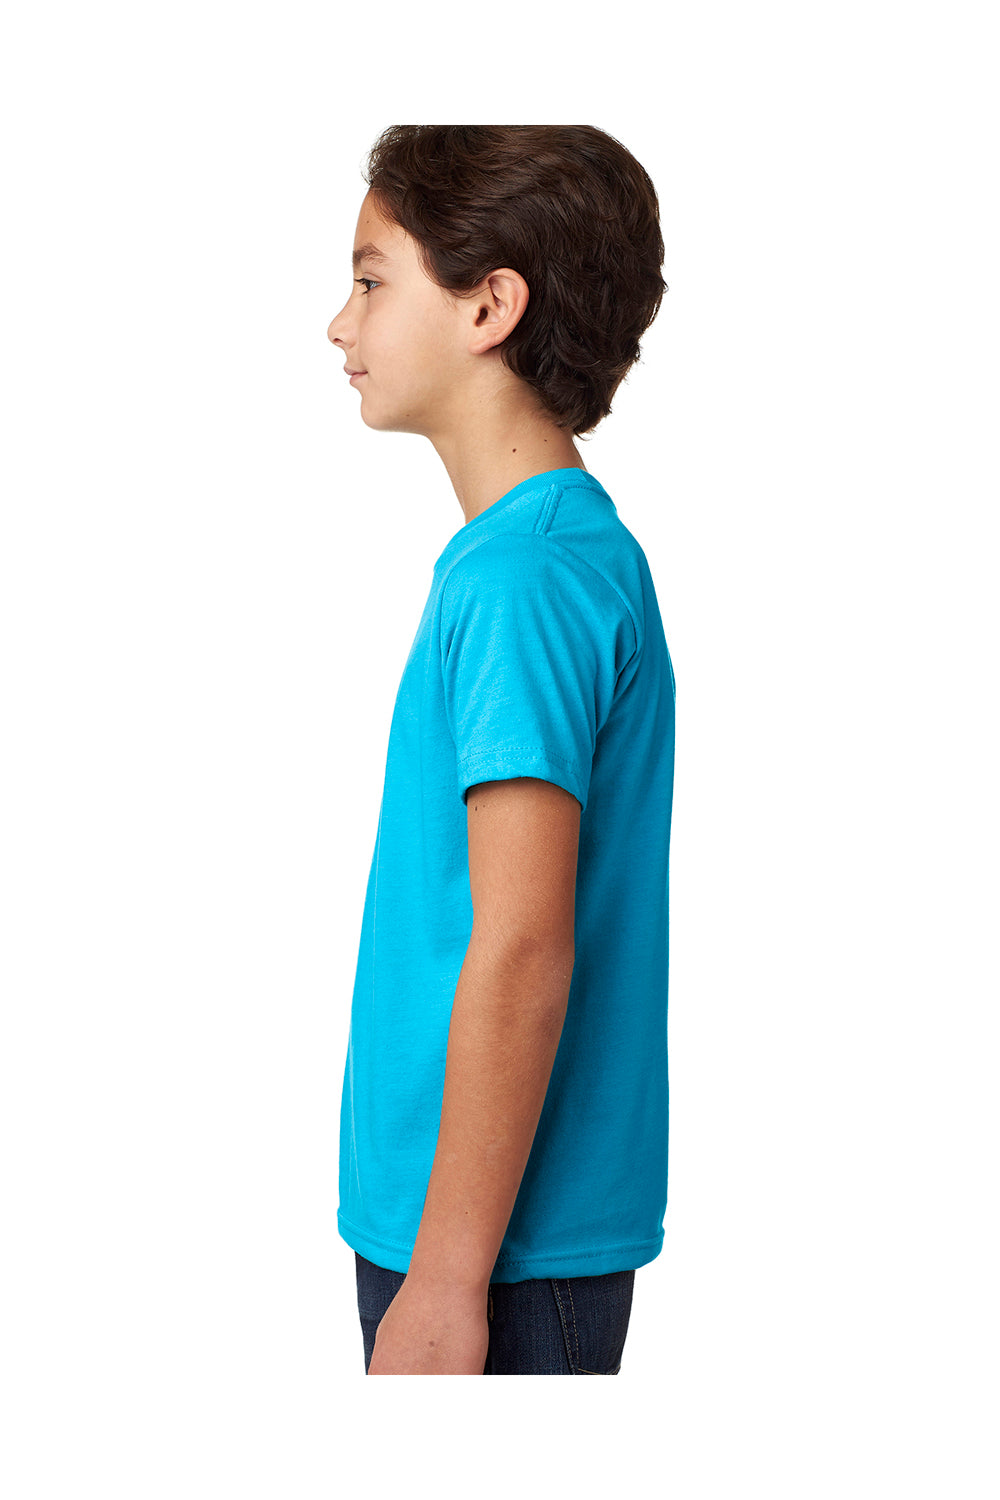 Next Level 3312 Youth CVC Jersey Short Sleeve Crewneck T-Shirt Turquoise Blue Side